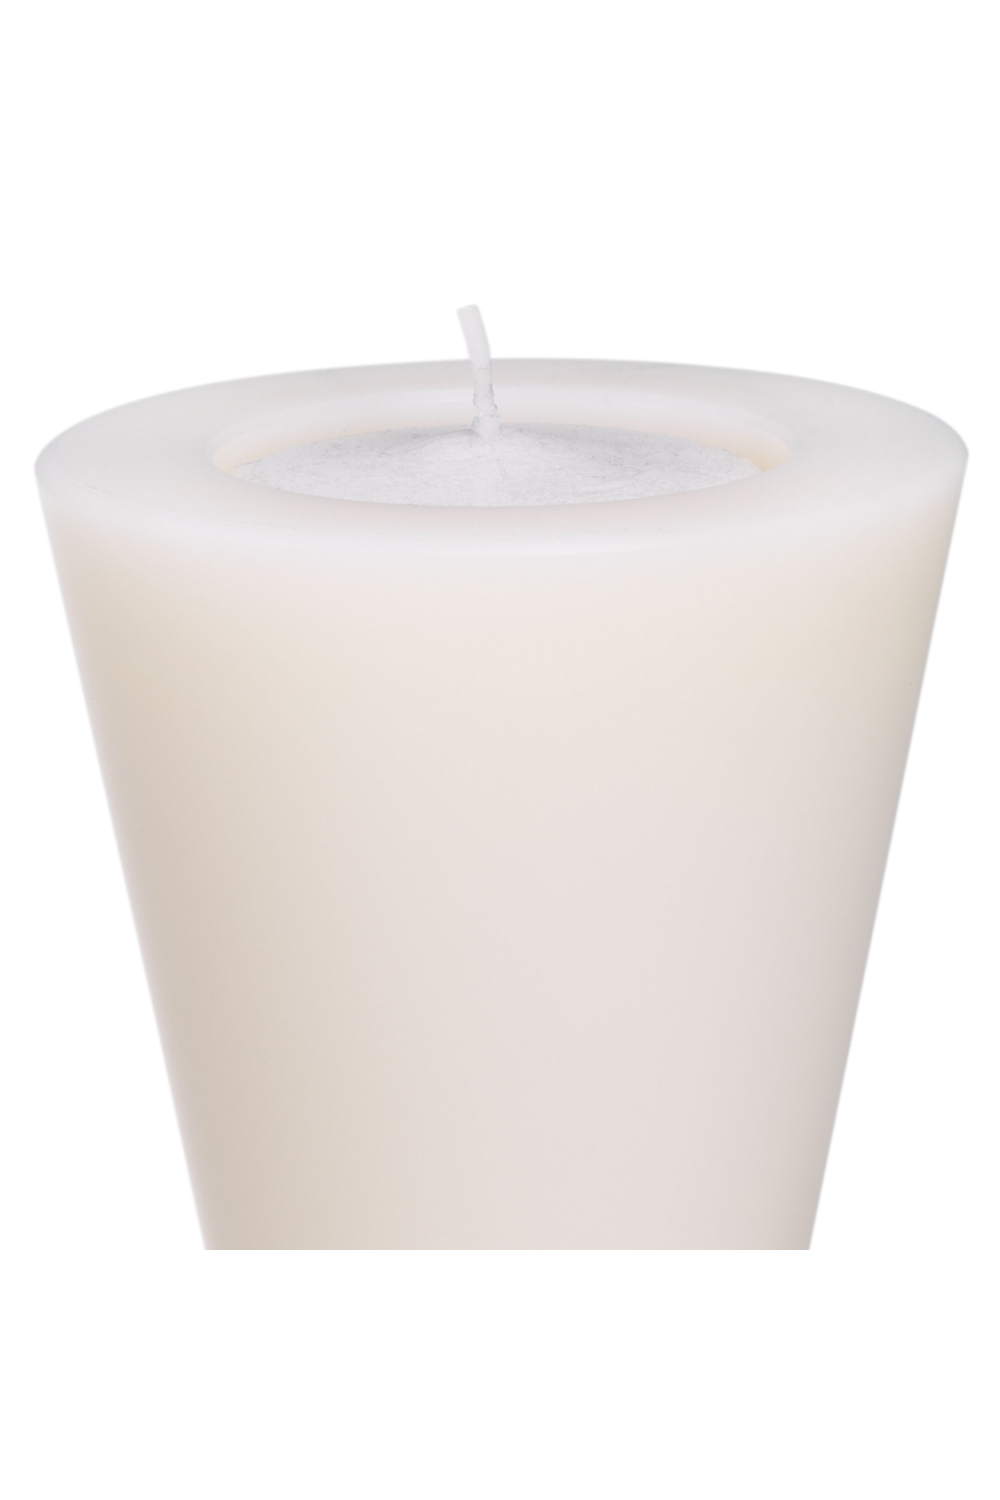 White Artificial Candles S (2) | Eichholtz Arto | OROA